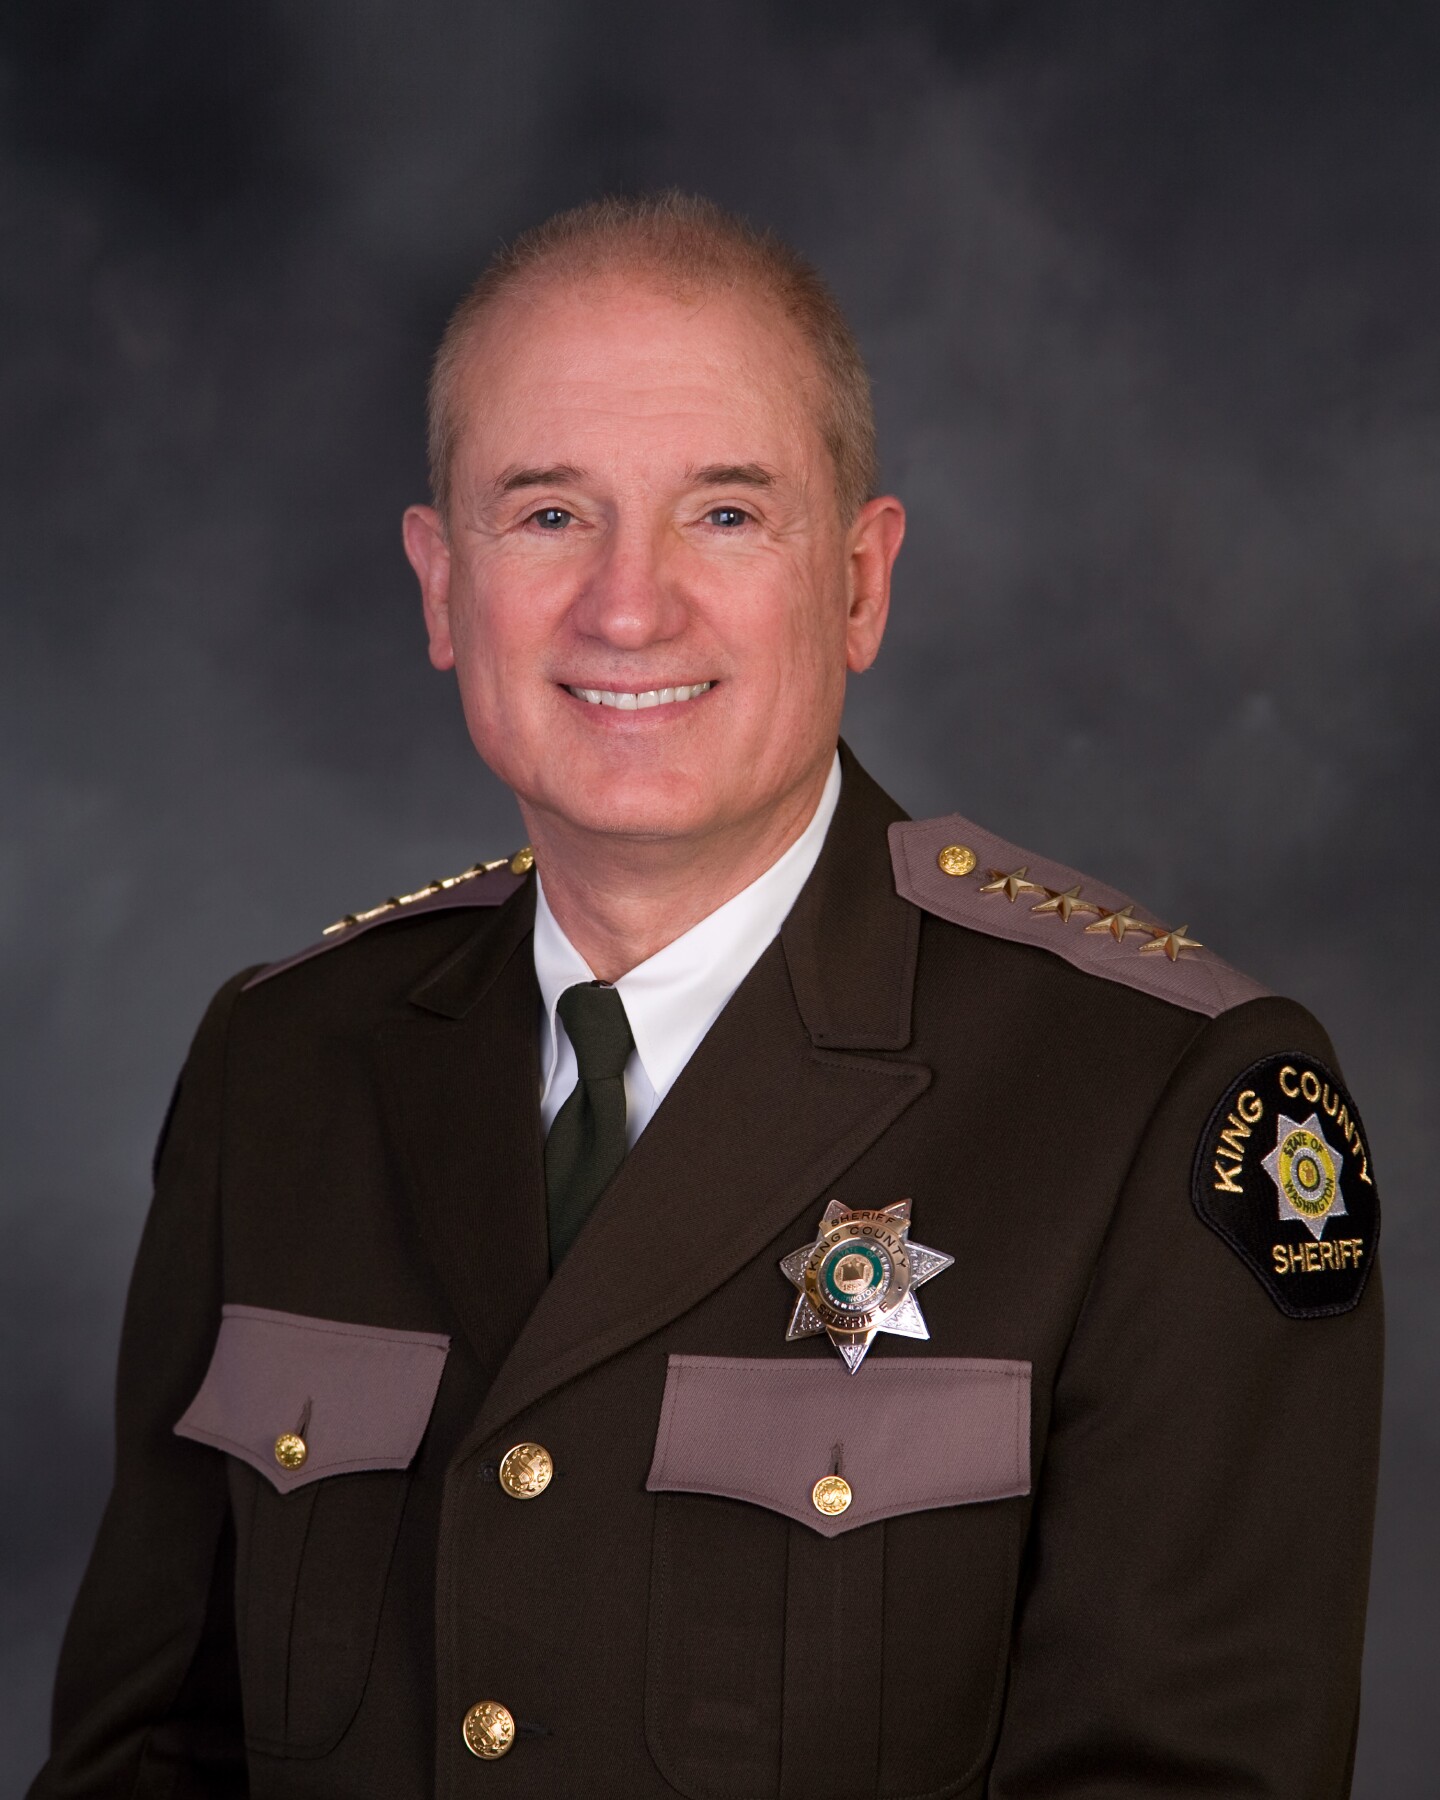 King County Sheriff John Urquhart